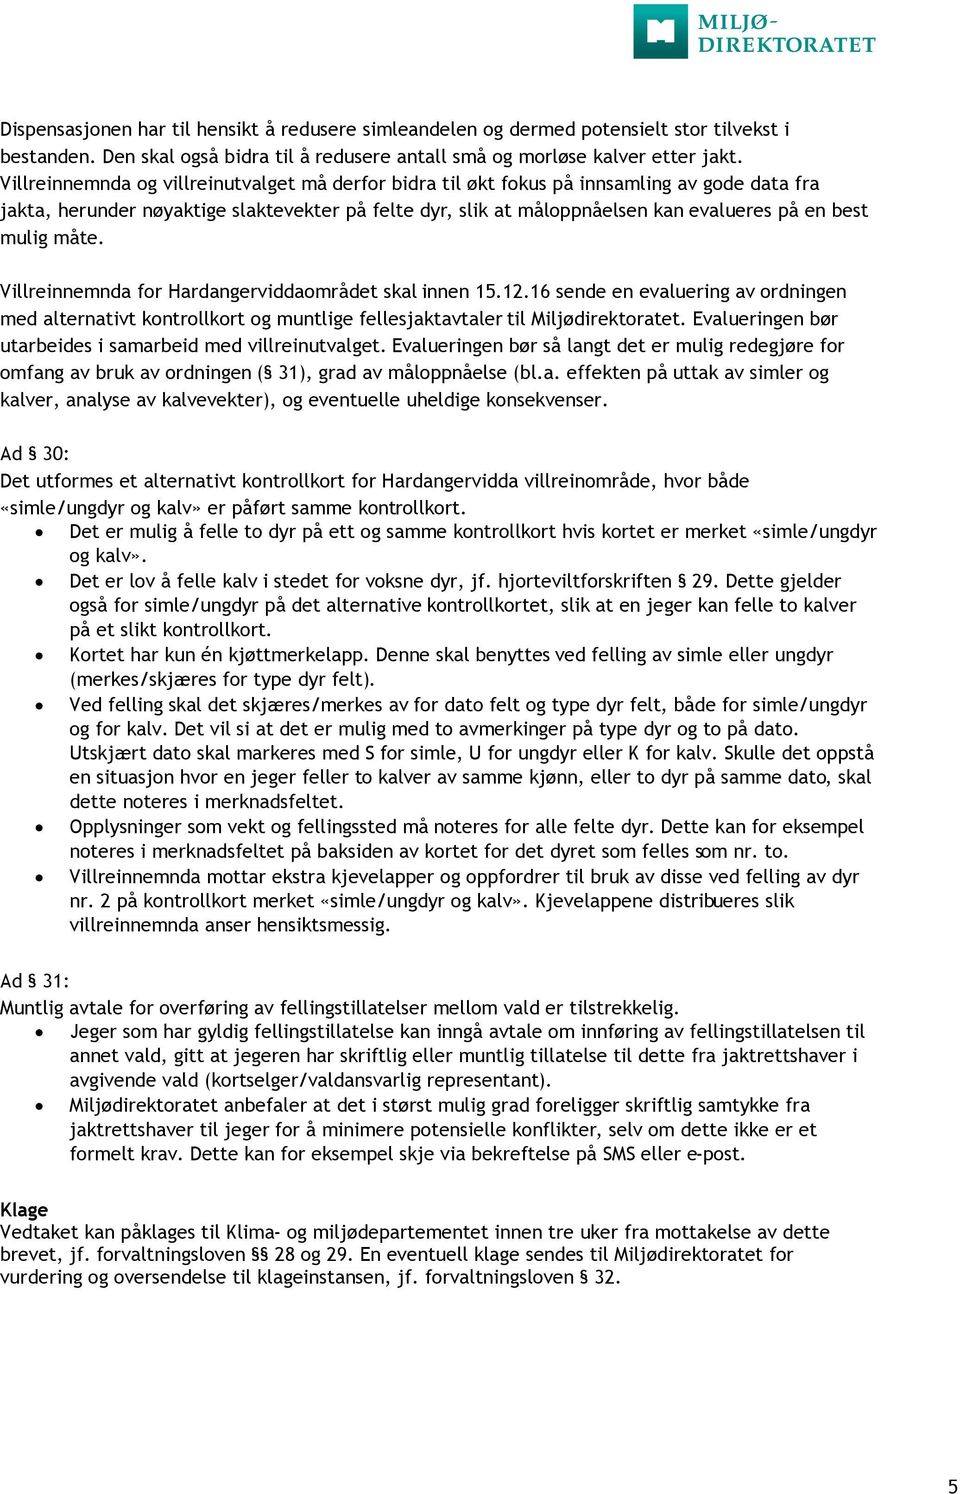 mulig måte. Villreinnemnda for Hardangerviddaområdet skal innen 15.12.16 sende en evaluering av ordningen med alternativt kontrollkort og muntlige fellesjaktavtaler til Miljødirektoratet.